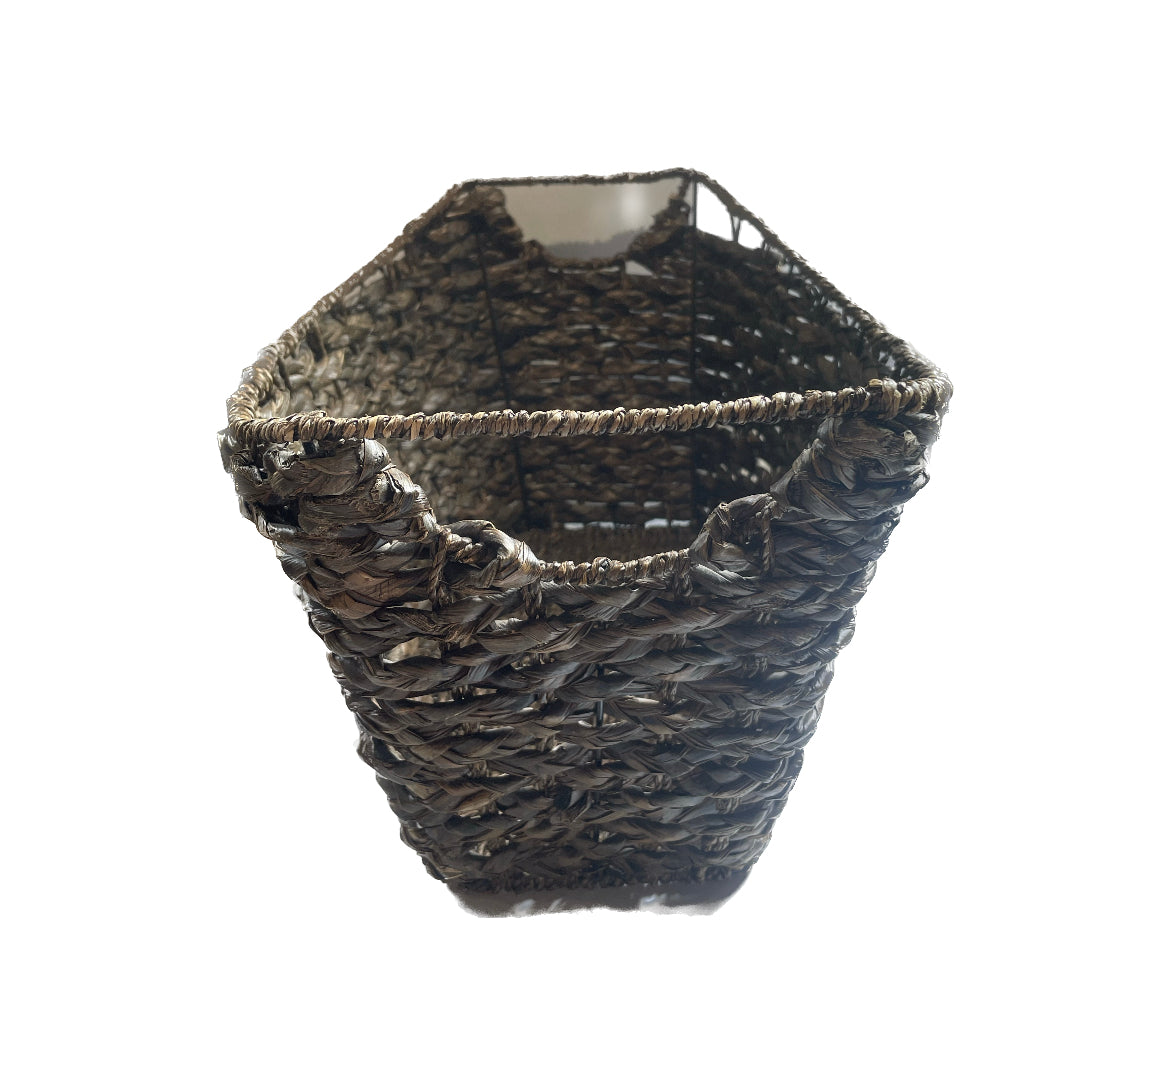 Chestnut Brown Wicker Basket with Handles 9" x 19.5" x 12"